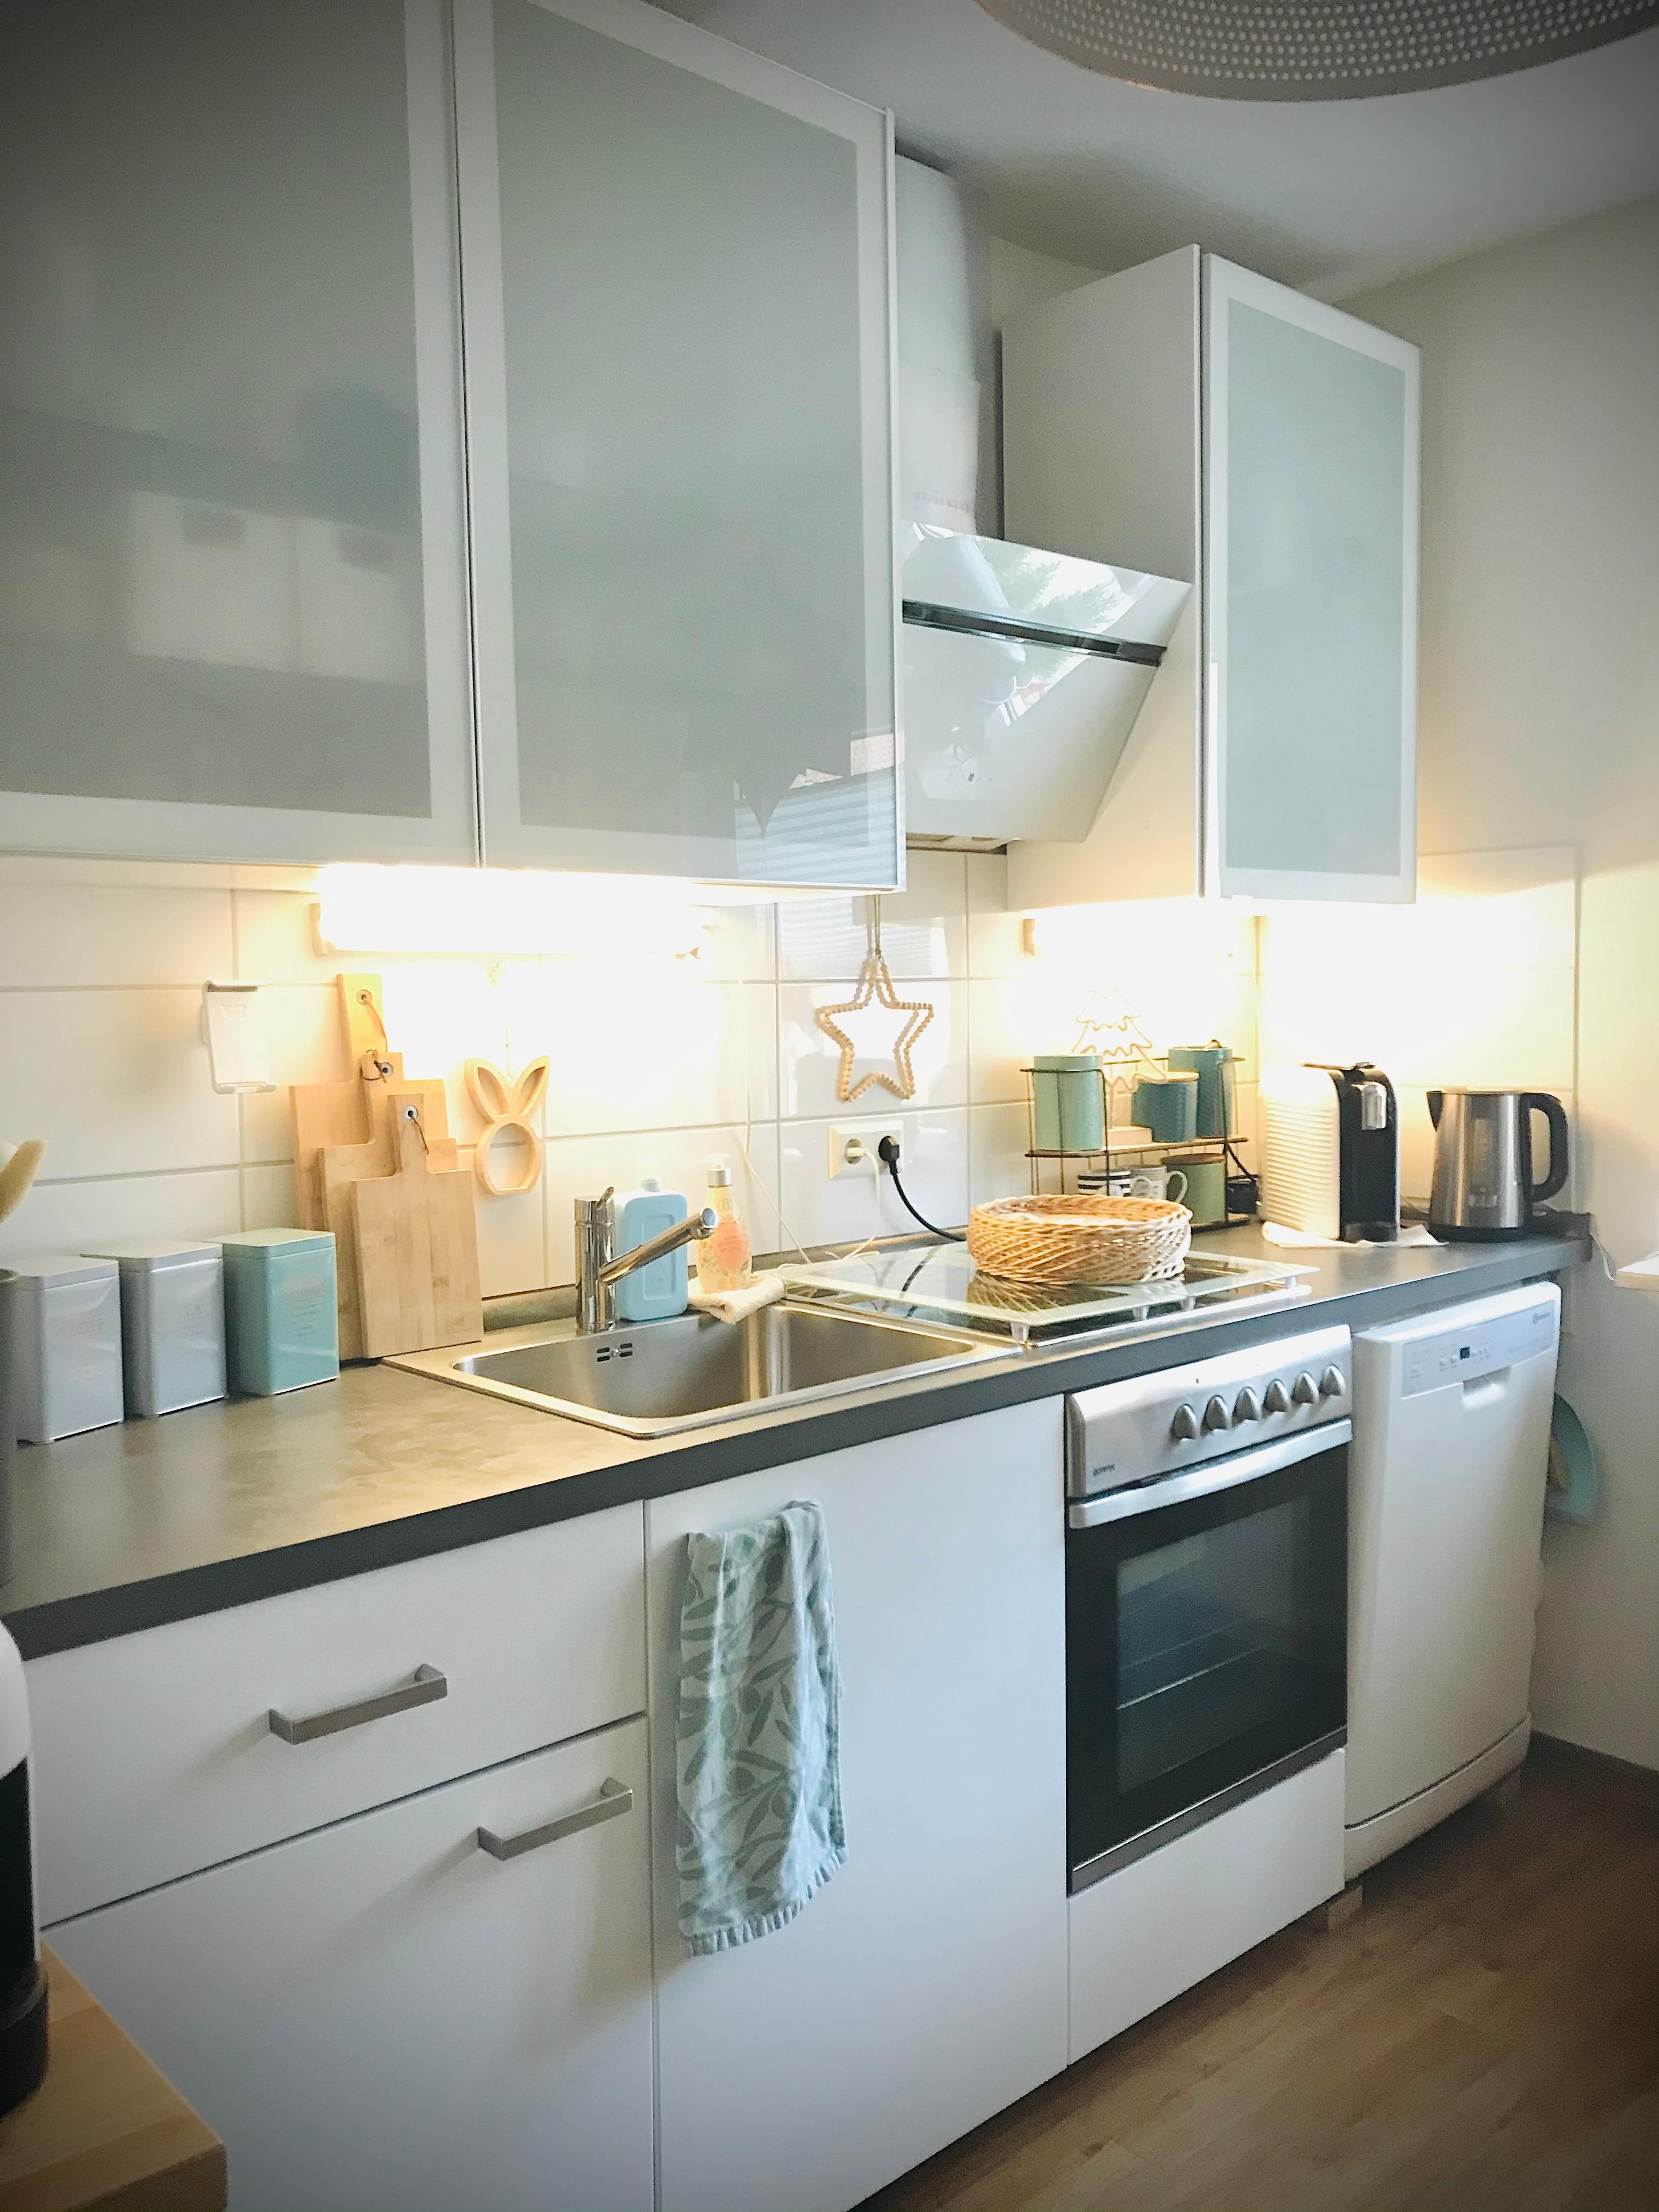 Ein Einblick in meine helle Küche 🍶
#Küchenblock #ikea #Küchendetail
